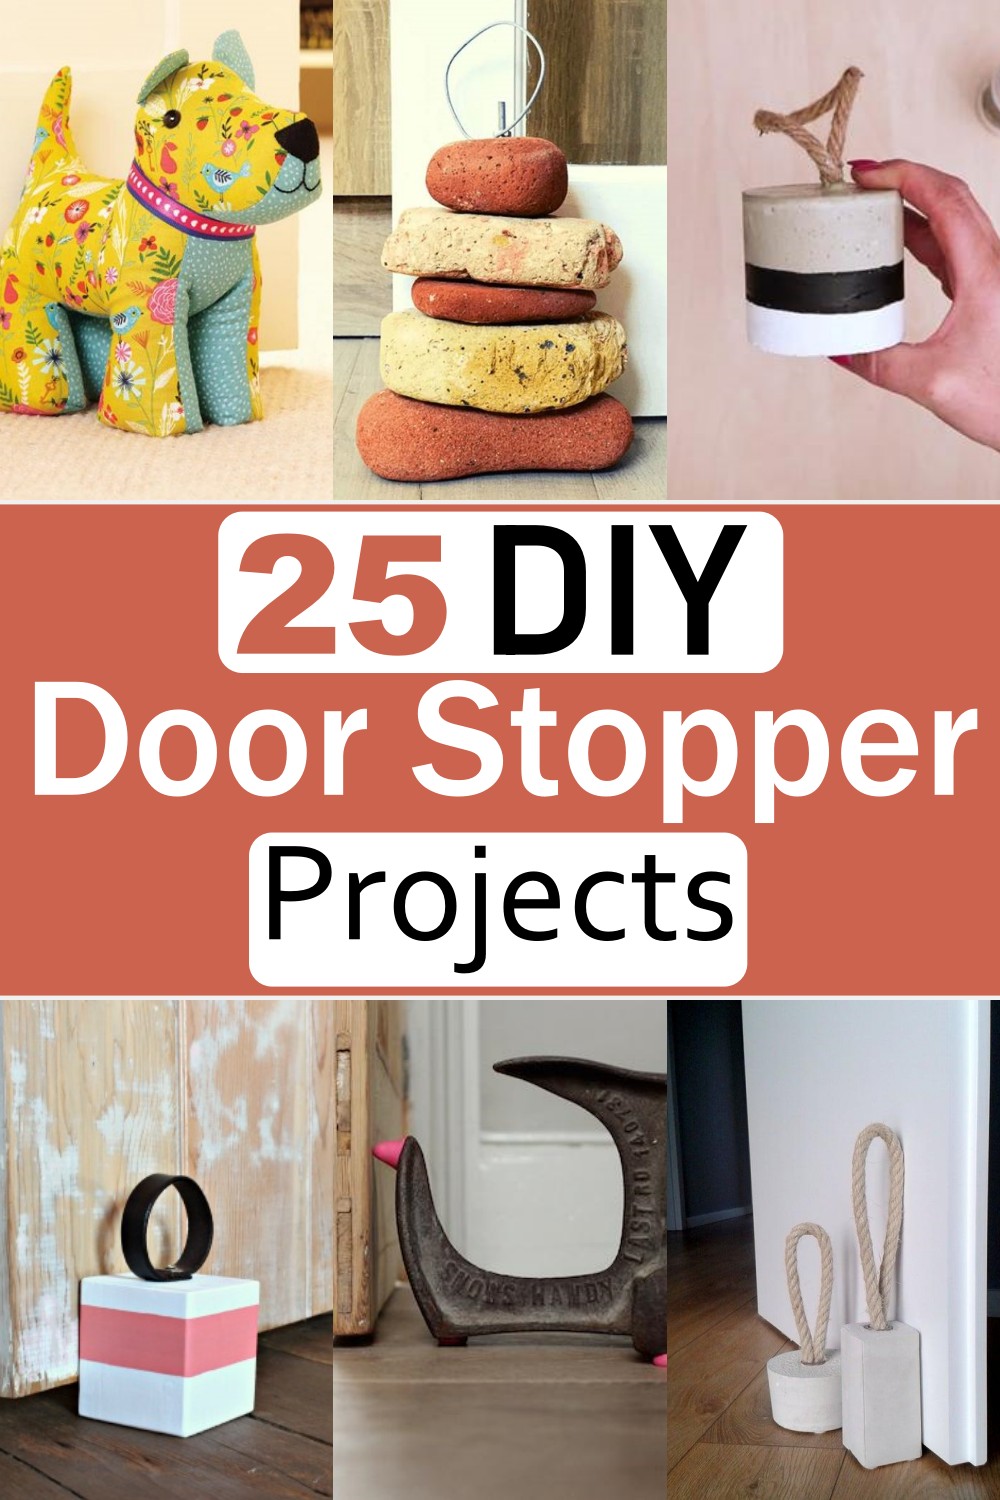  DIY Door Stopper Projects